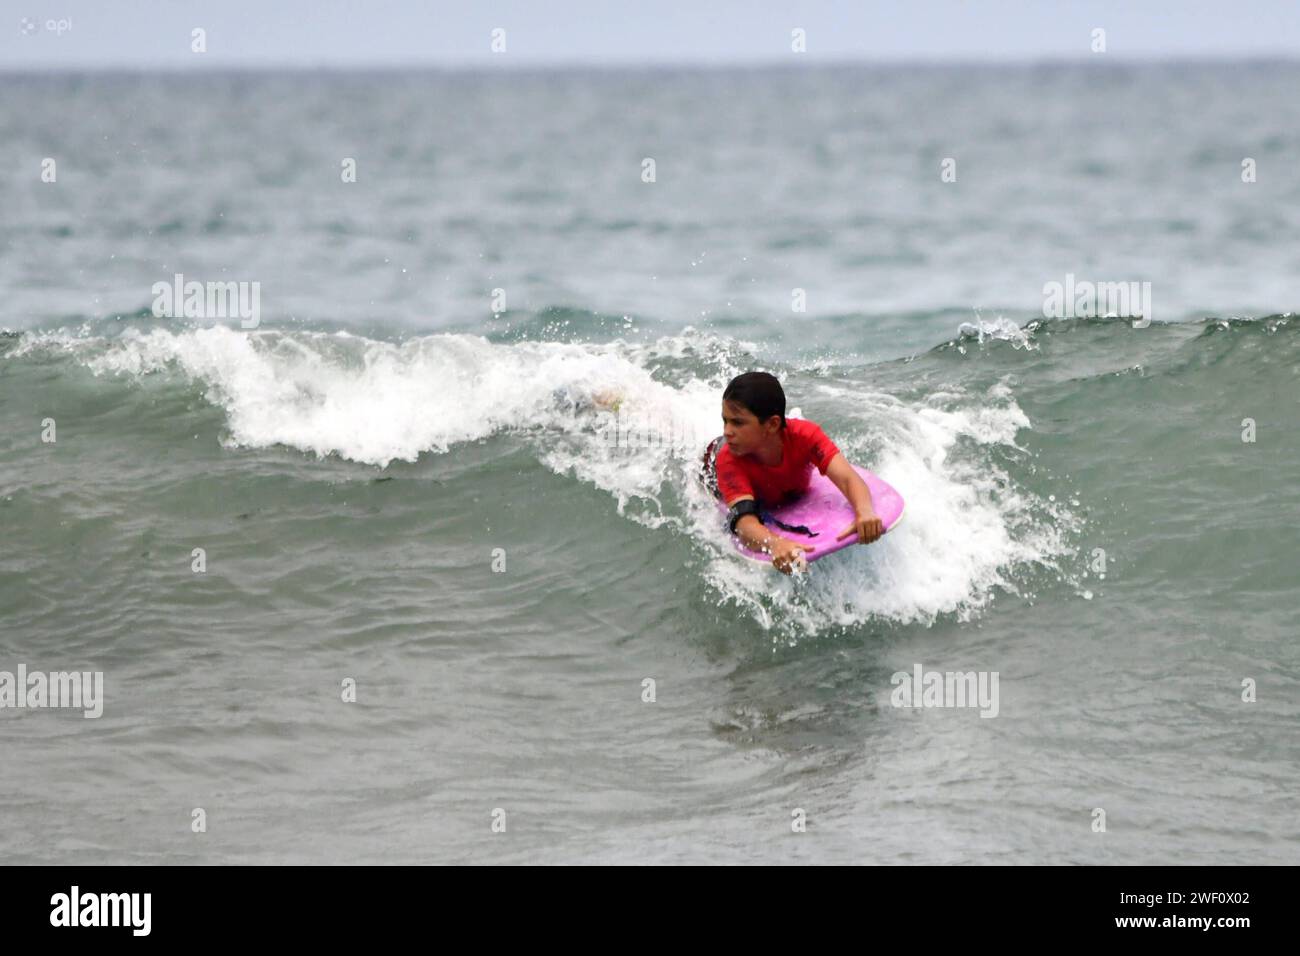 MANTA-SURF-TURISMO-EMERGENCIA-NACIONAL Manta, 27 de enero de 2023. Tras la emergencia de seguridad nacional y el Estado de Excepcion, las playas de Manta de a poco retoman una Mayor presencia de turistas. TambiÃ n se lleva a cabo la primera edicion del Manta Pro Surf 2024, organisado por la Liga Pro de Surf y que espera llevar esta competencia a diferentes playas de Ecuador. API / Ariel OCHOA Manta Manabi Ecuador SOI-MANTA-SURF-TURISMO-EMERGENCIA-NACIONAL-f45eb9b08a460a8d015c5427527f1777 *** MANTA SURF TOURISMUS NATIONALE NOTFALL Manta, 27. Januar 2023 nach der nationalen Sicherheit NOTFALL und Stockfoto